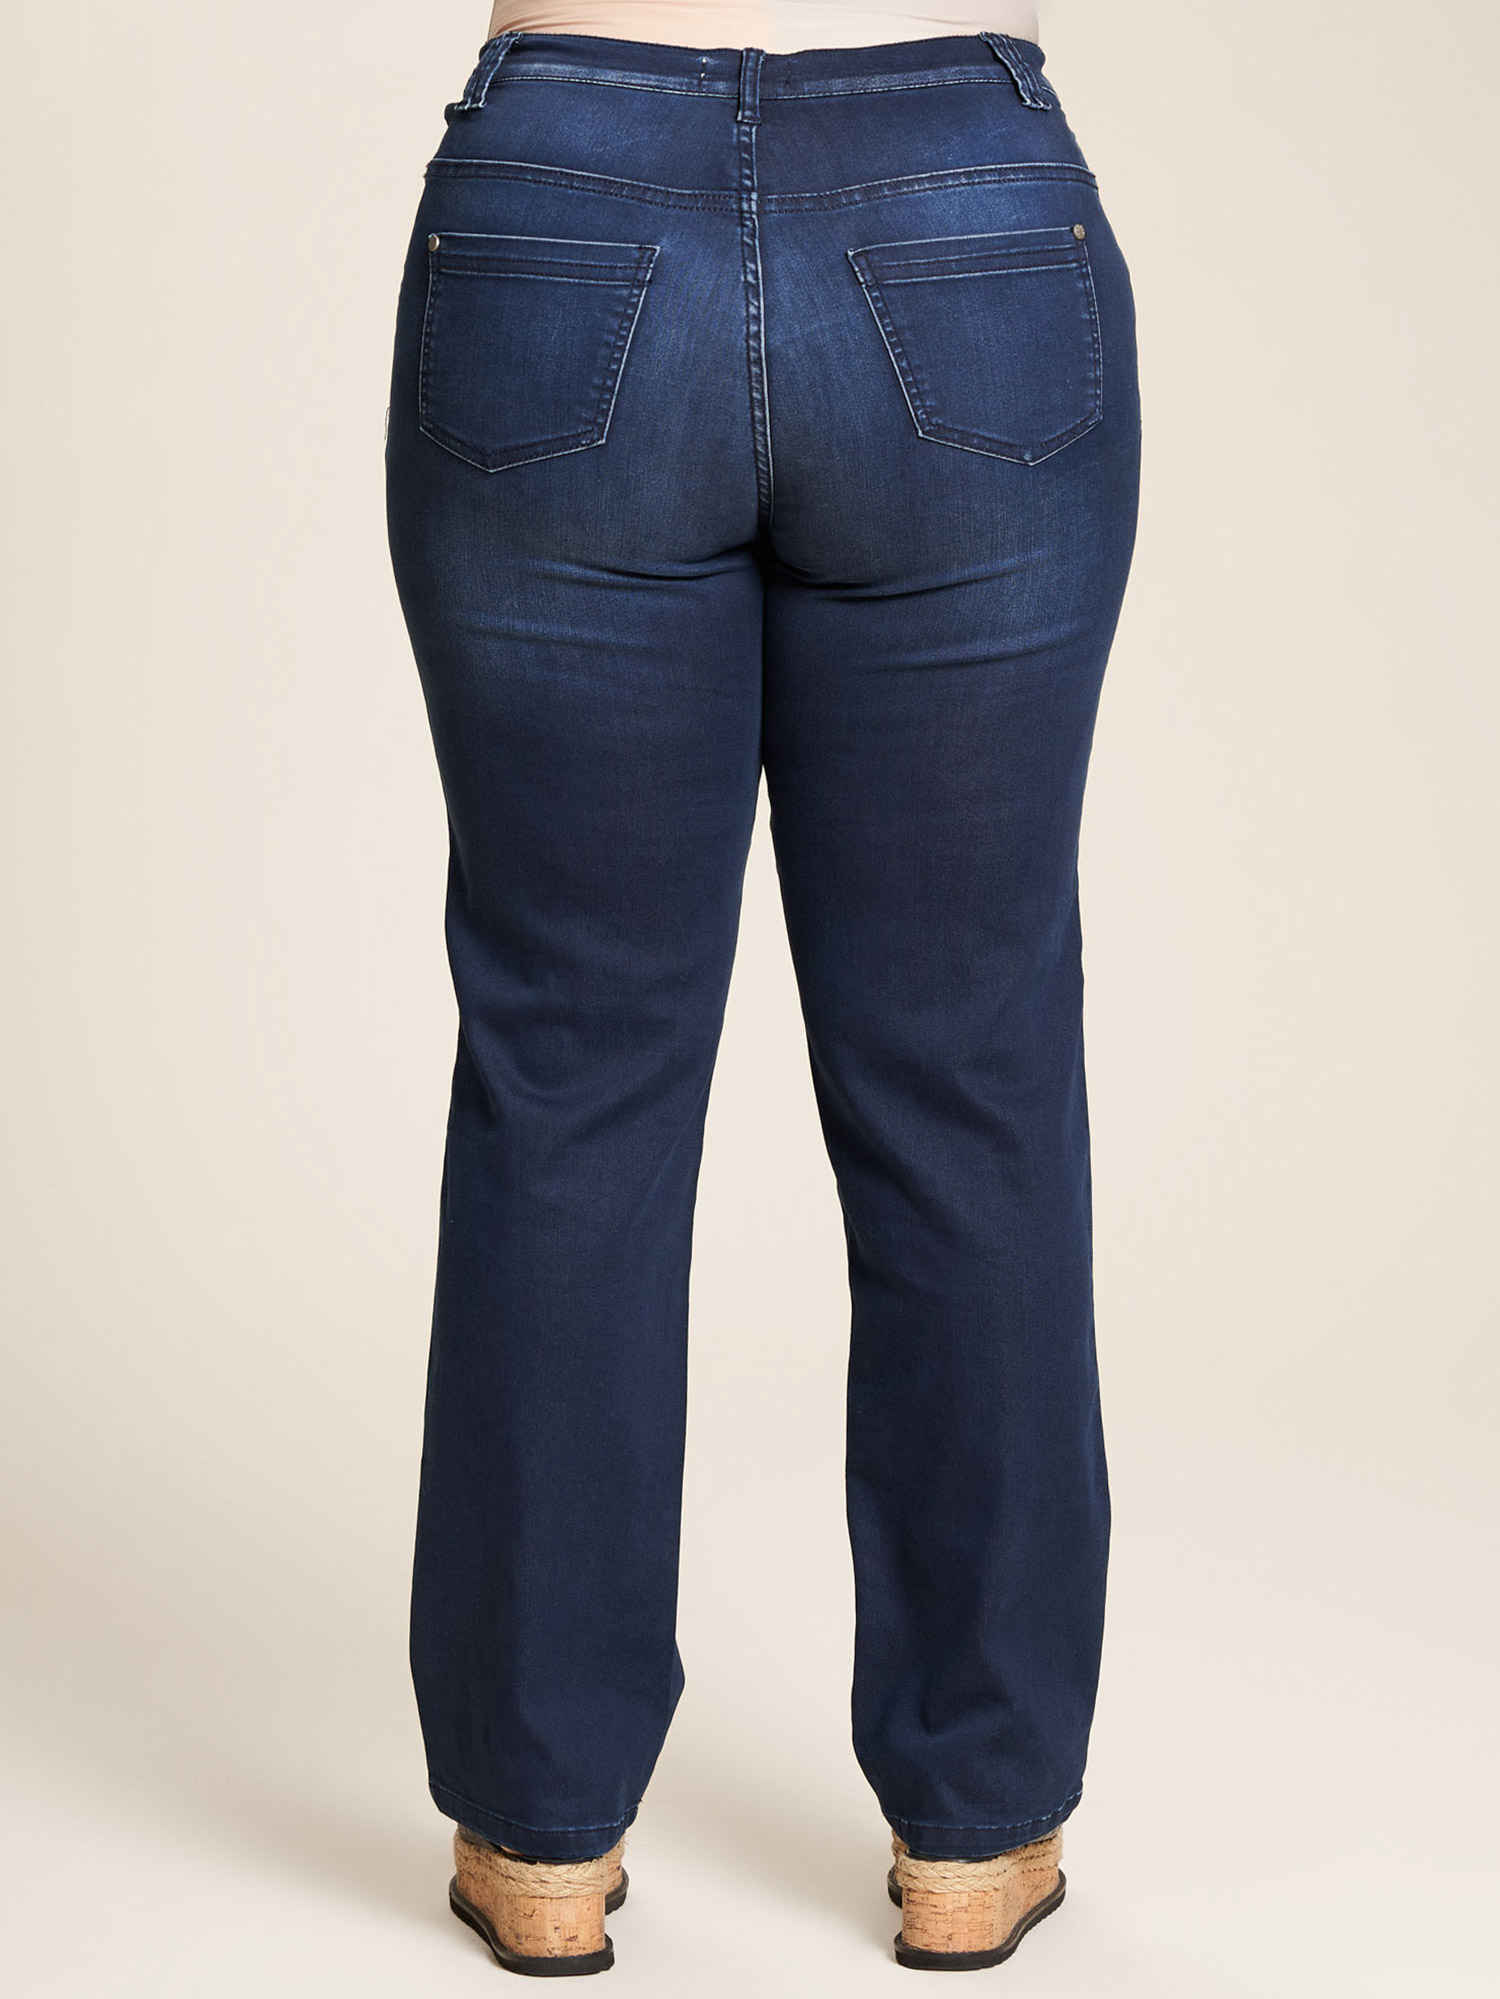 Ashley - Mørkeblå jeans med lige ben, lige pasform og lang benlængde fra Studio